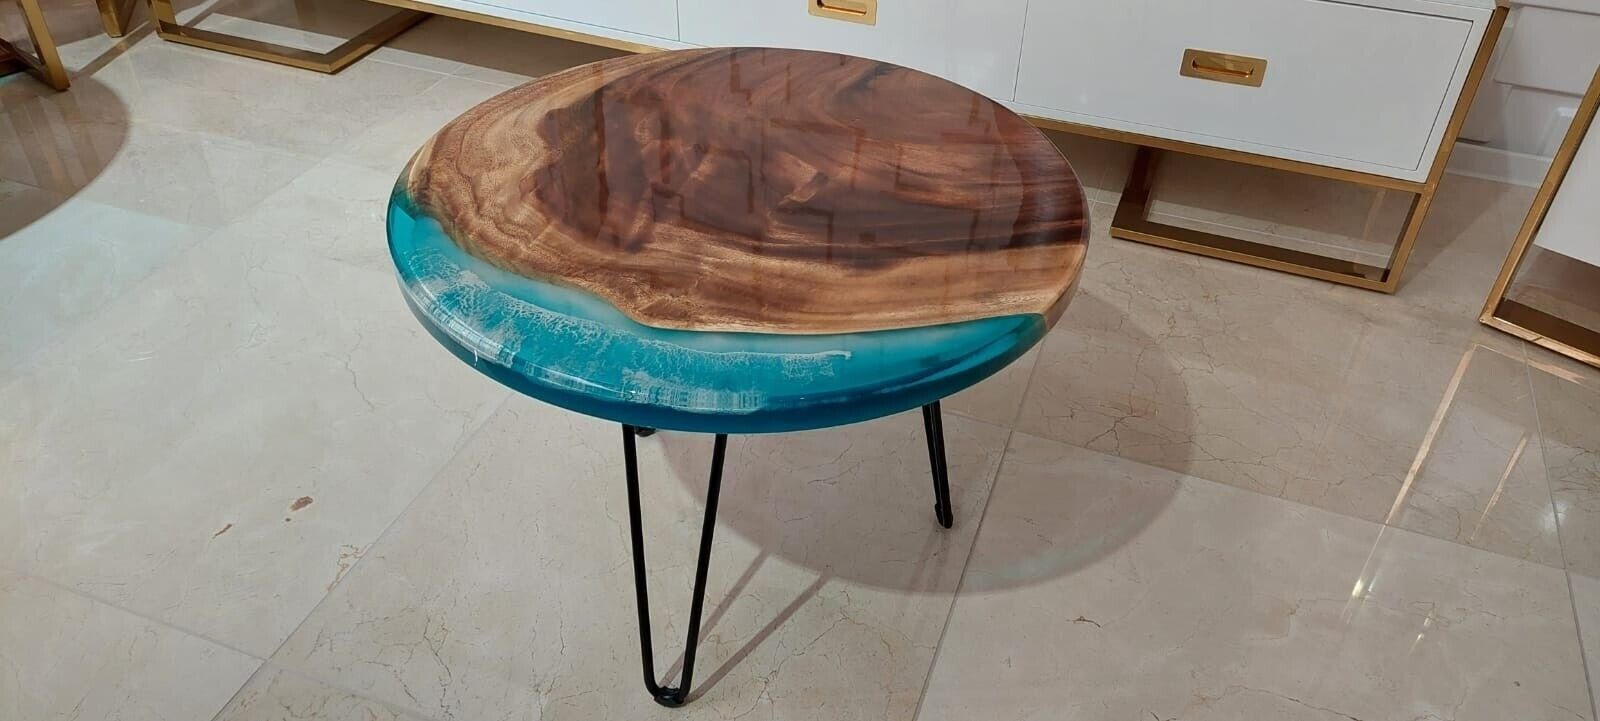 Tische Möbel Holz (Couchtisch), JVmoebel Europe Couchtisch Couchtisch Tisch Harz in Sofort Handarbeit Wohnzimmer Made